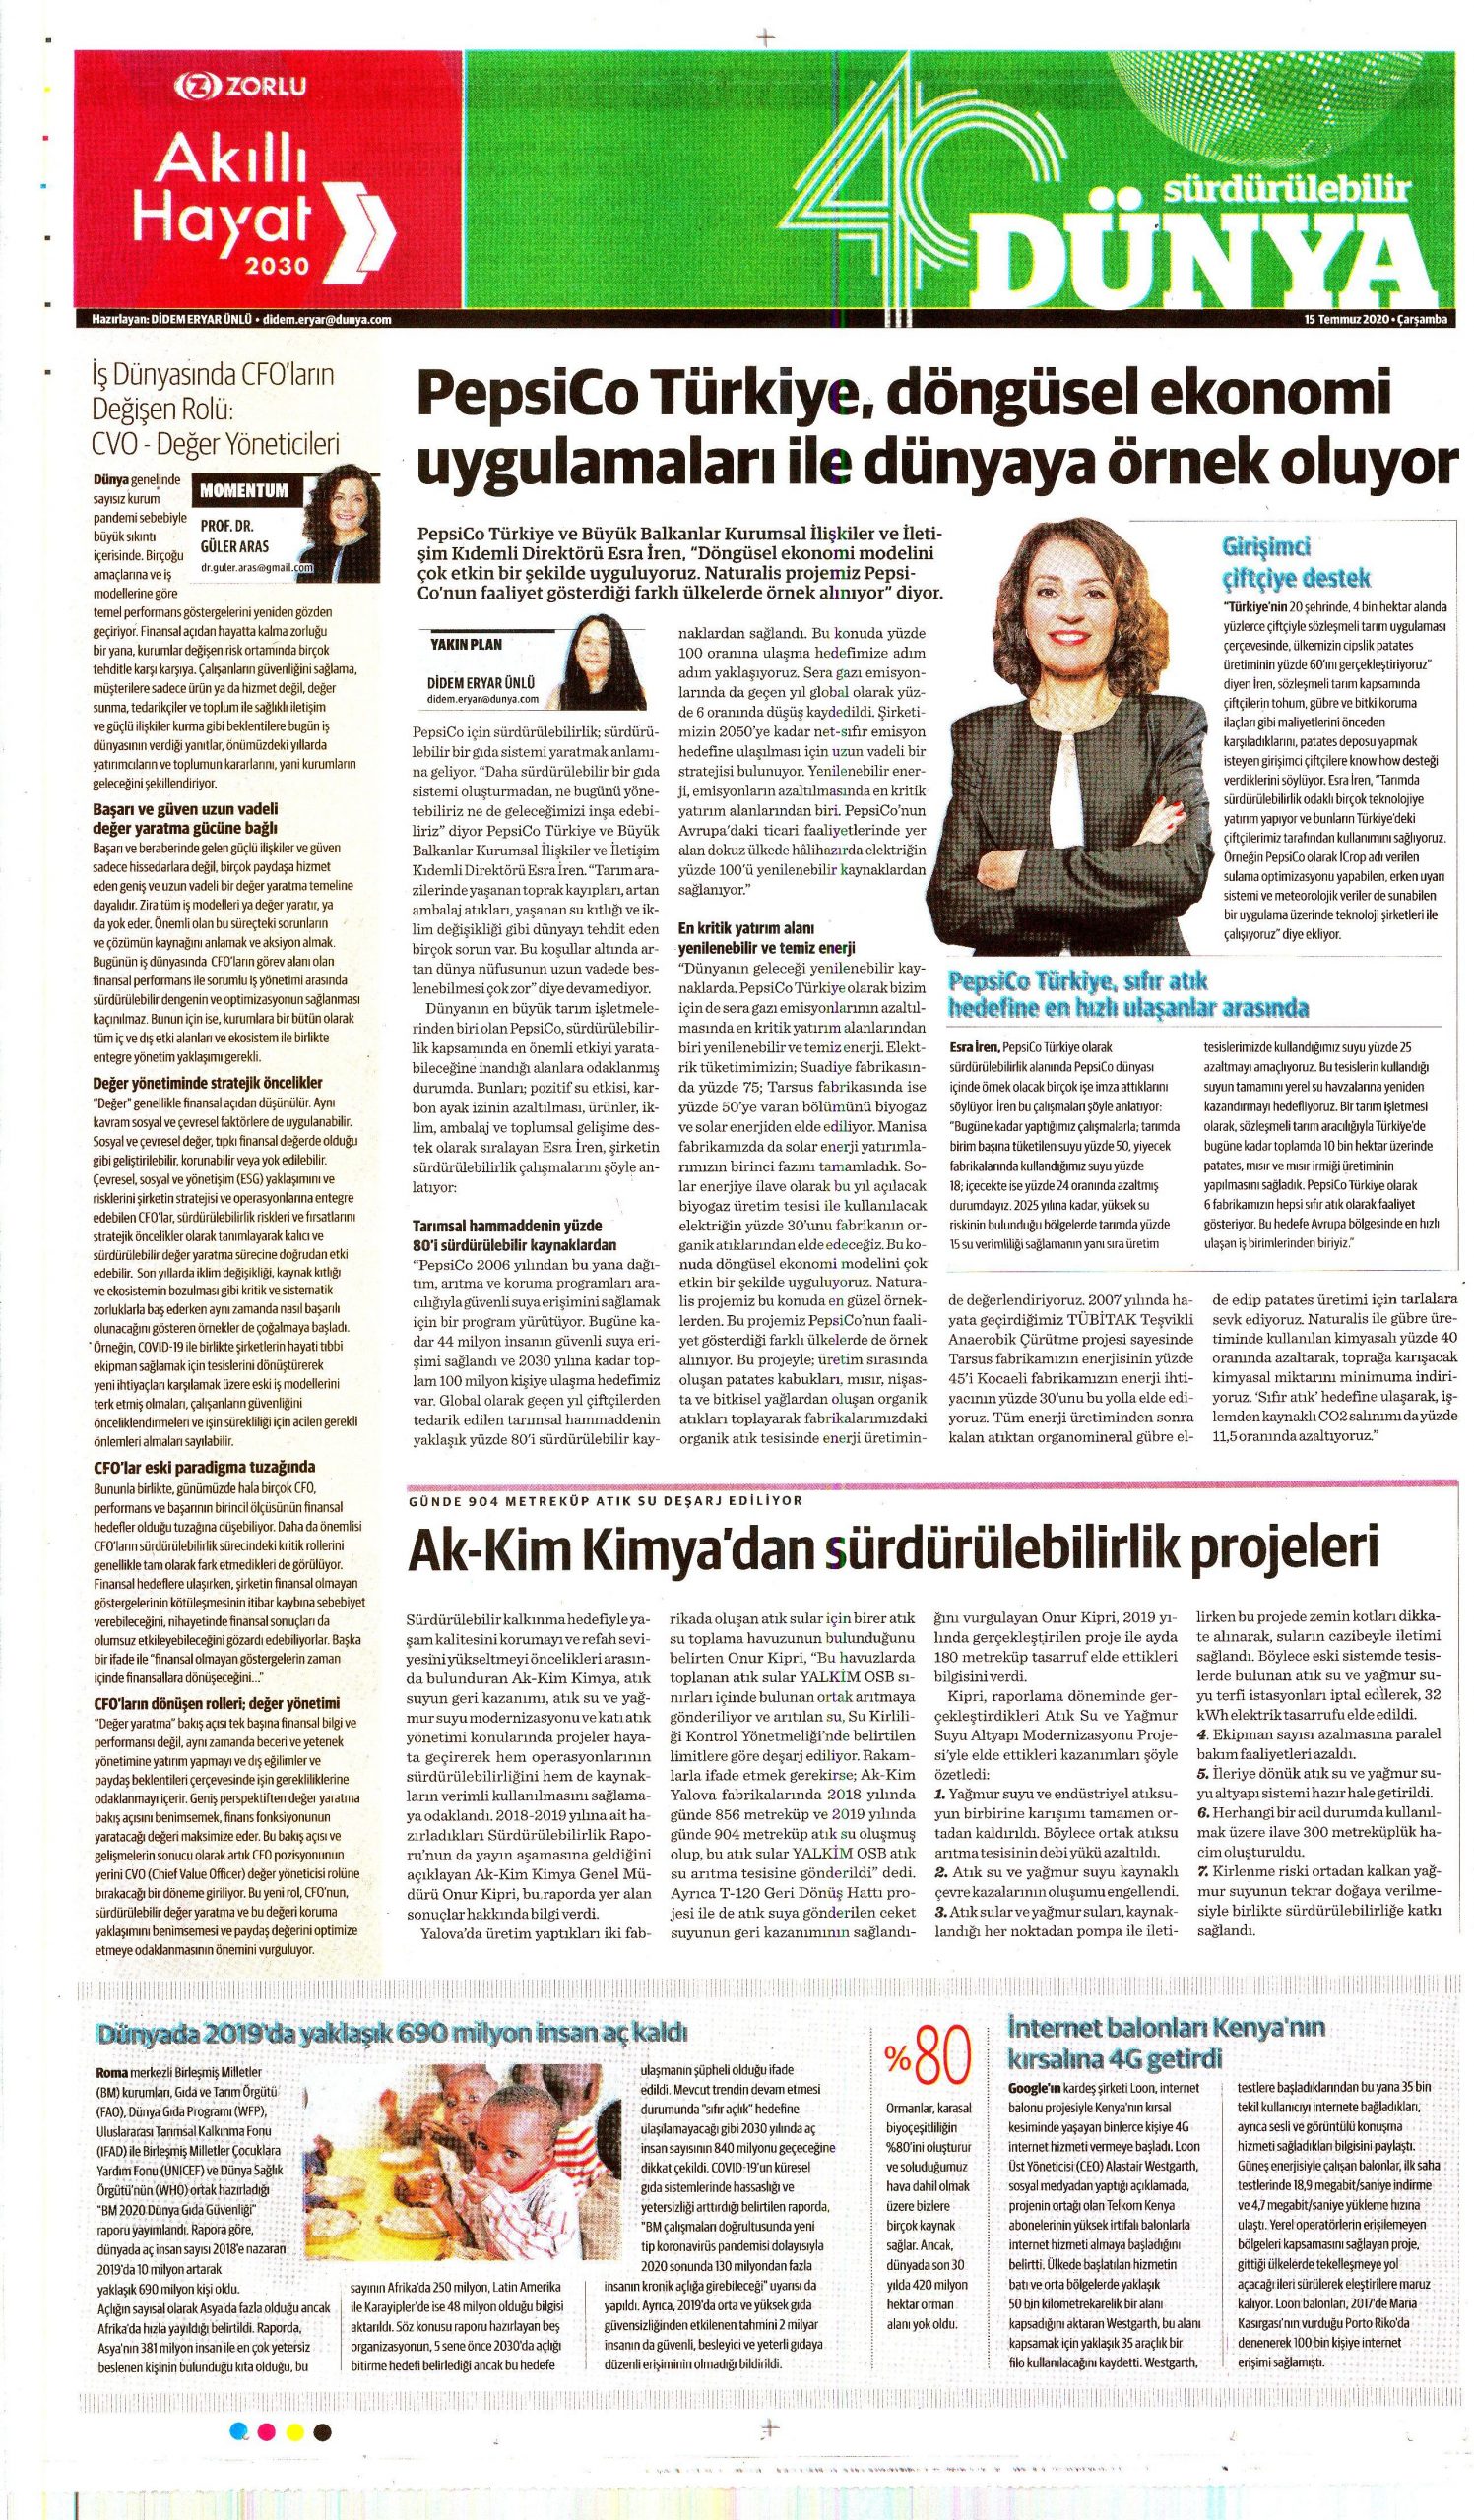 Sustainability Projects from Akkim Kimya / Dünya Newspaper – 15 July 2020